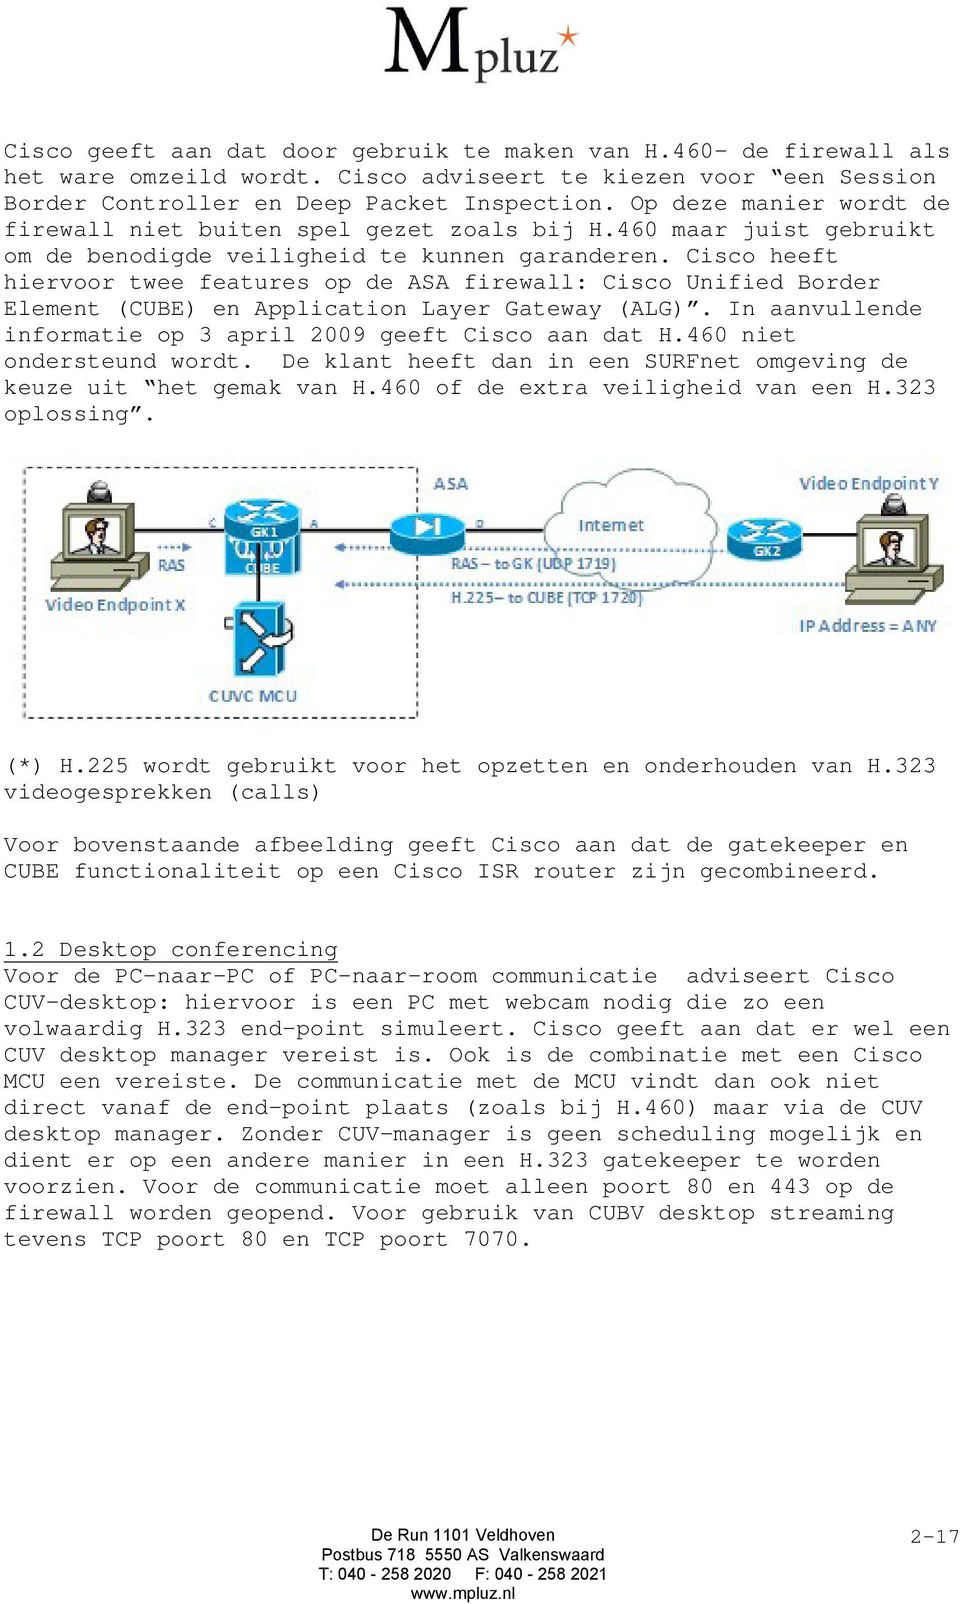 Cisco heeft hiervoor twee features op de ASA firewall: Cisco Unified Border Element (CUBE) en Application Layer Gateway (ALG). In aanvullende informatie op 3 april 2009 geeft Cisco aan dat H.